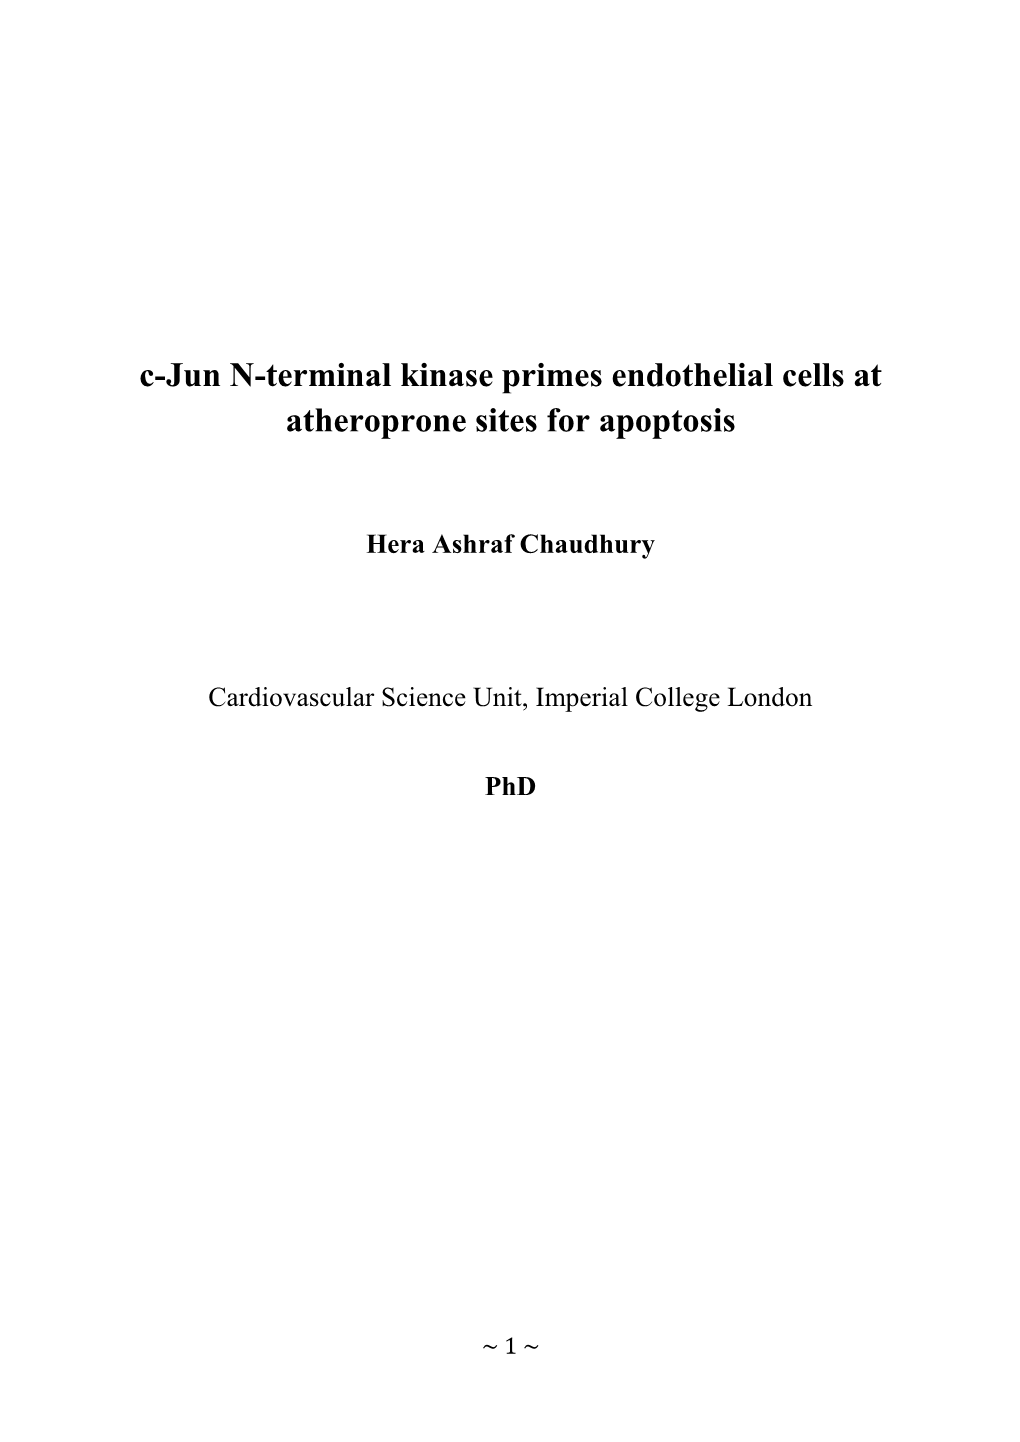 C-Jun N-Terminal Kinase Primes Endothelial Cells at Atheroprone Sites for Apoptosis